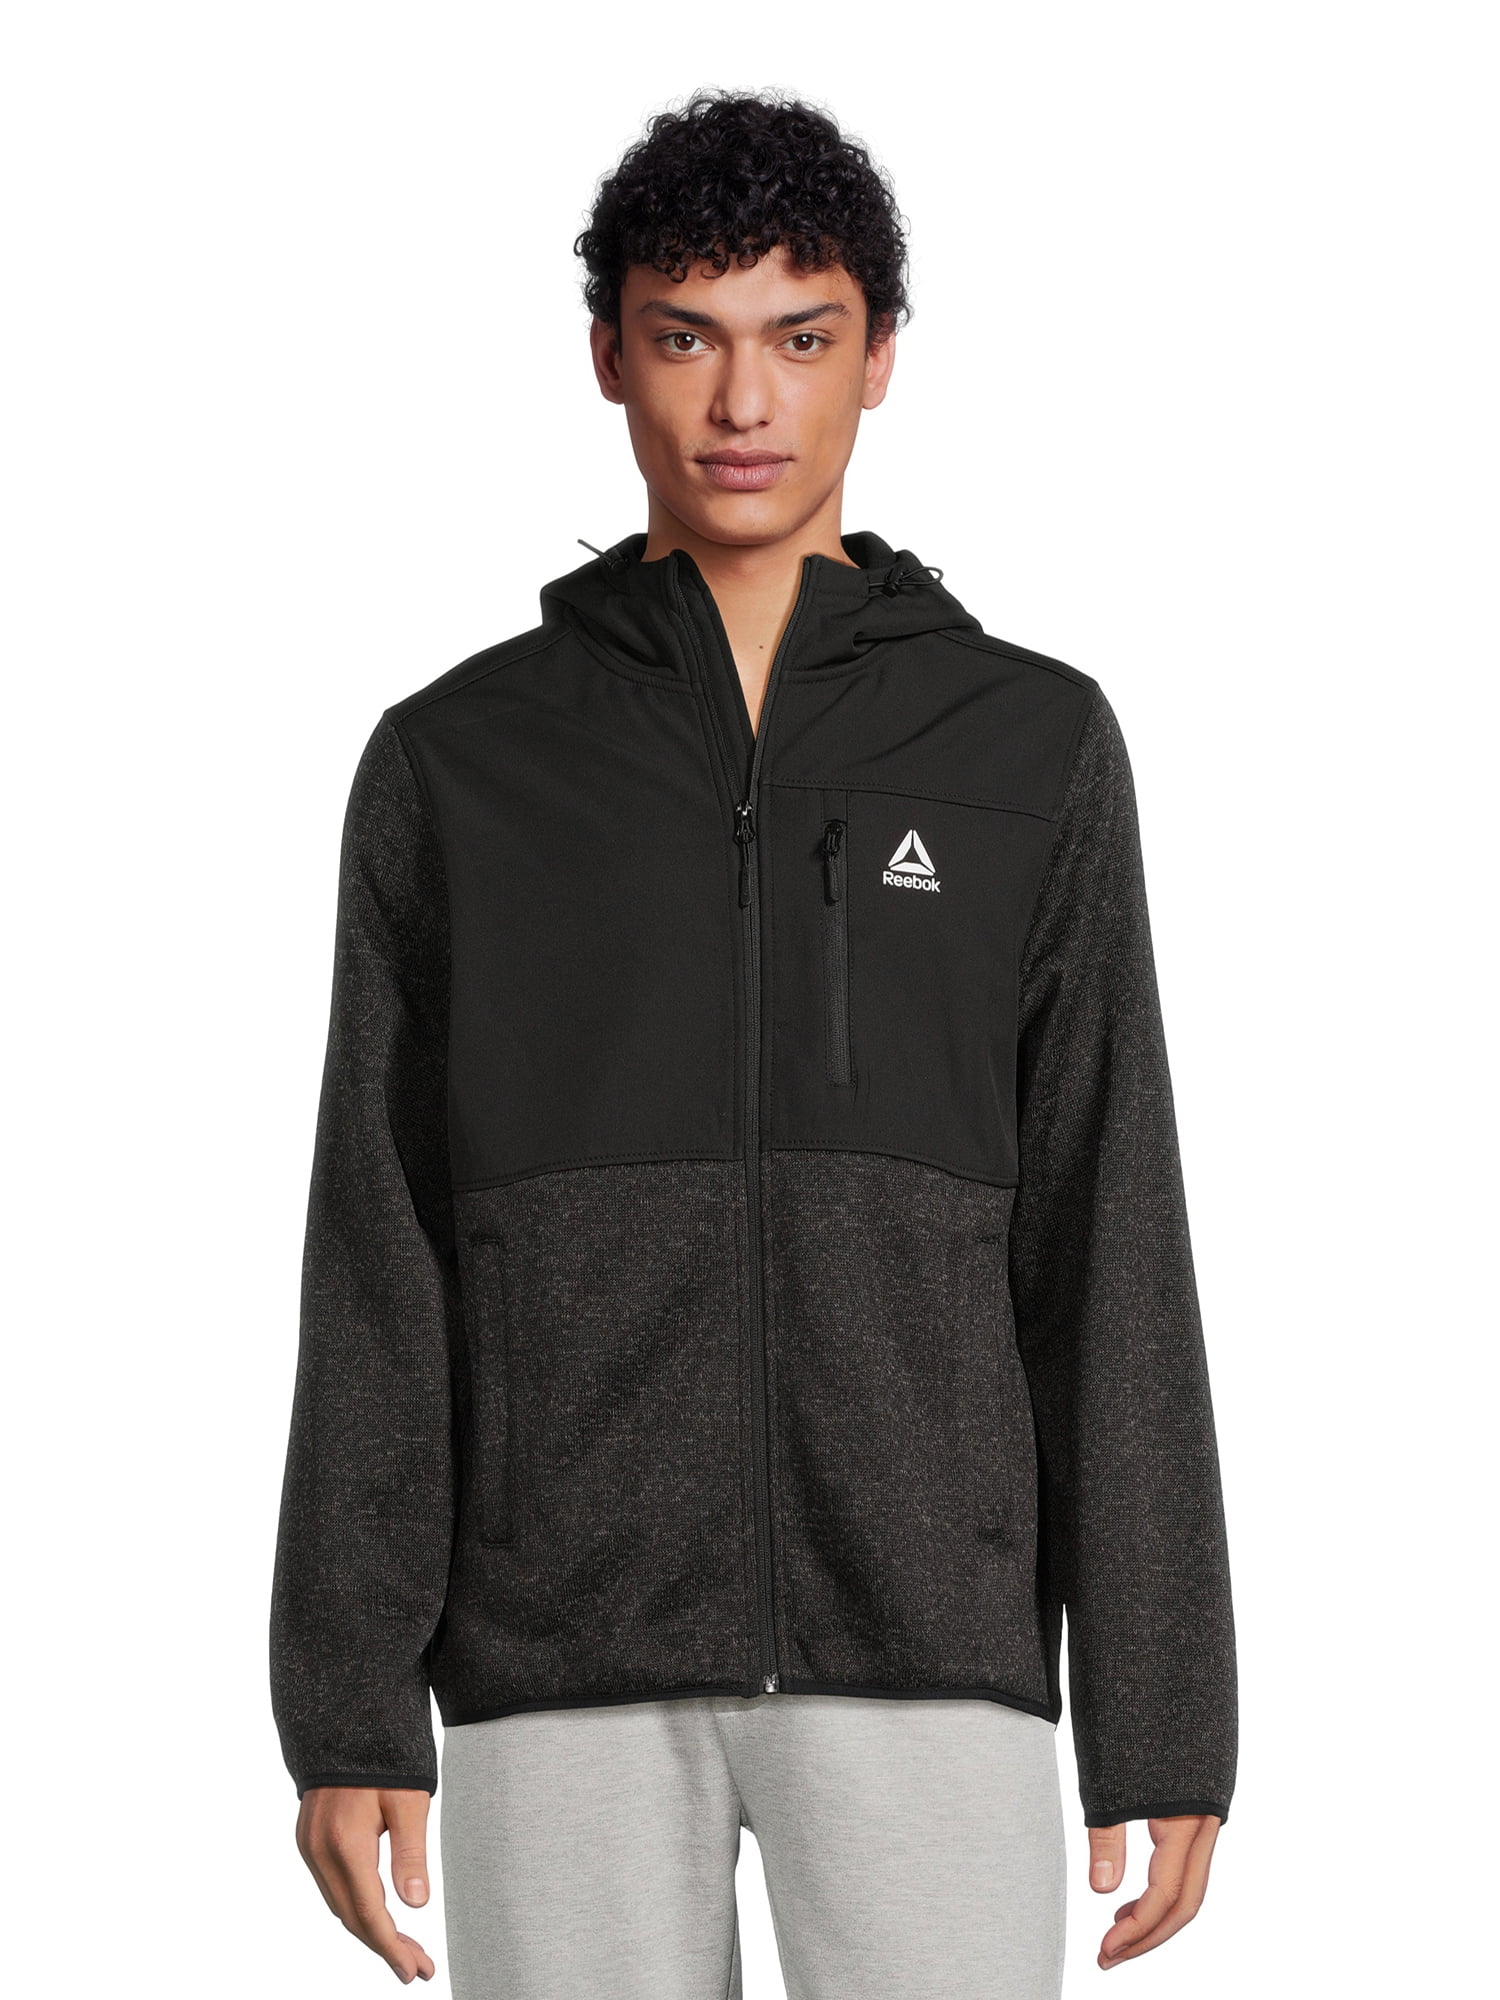 Reebok Men’s Hooded Sweater Fleece Jacket (Black or Grey) $20 + Free S ...